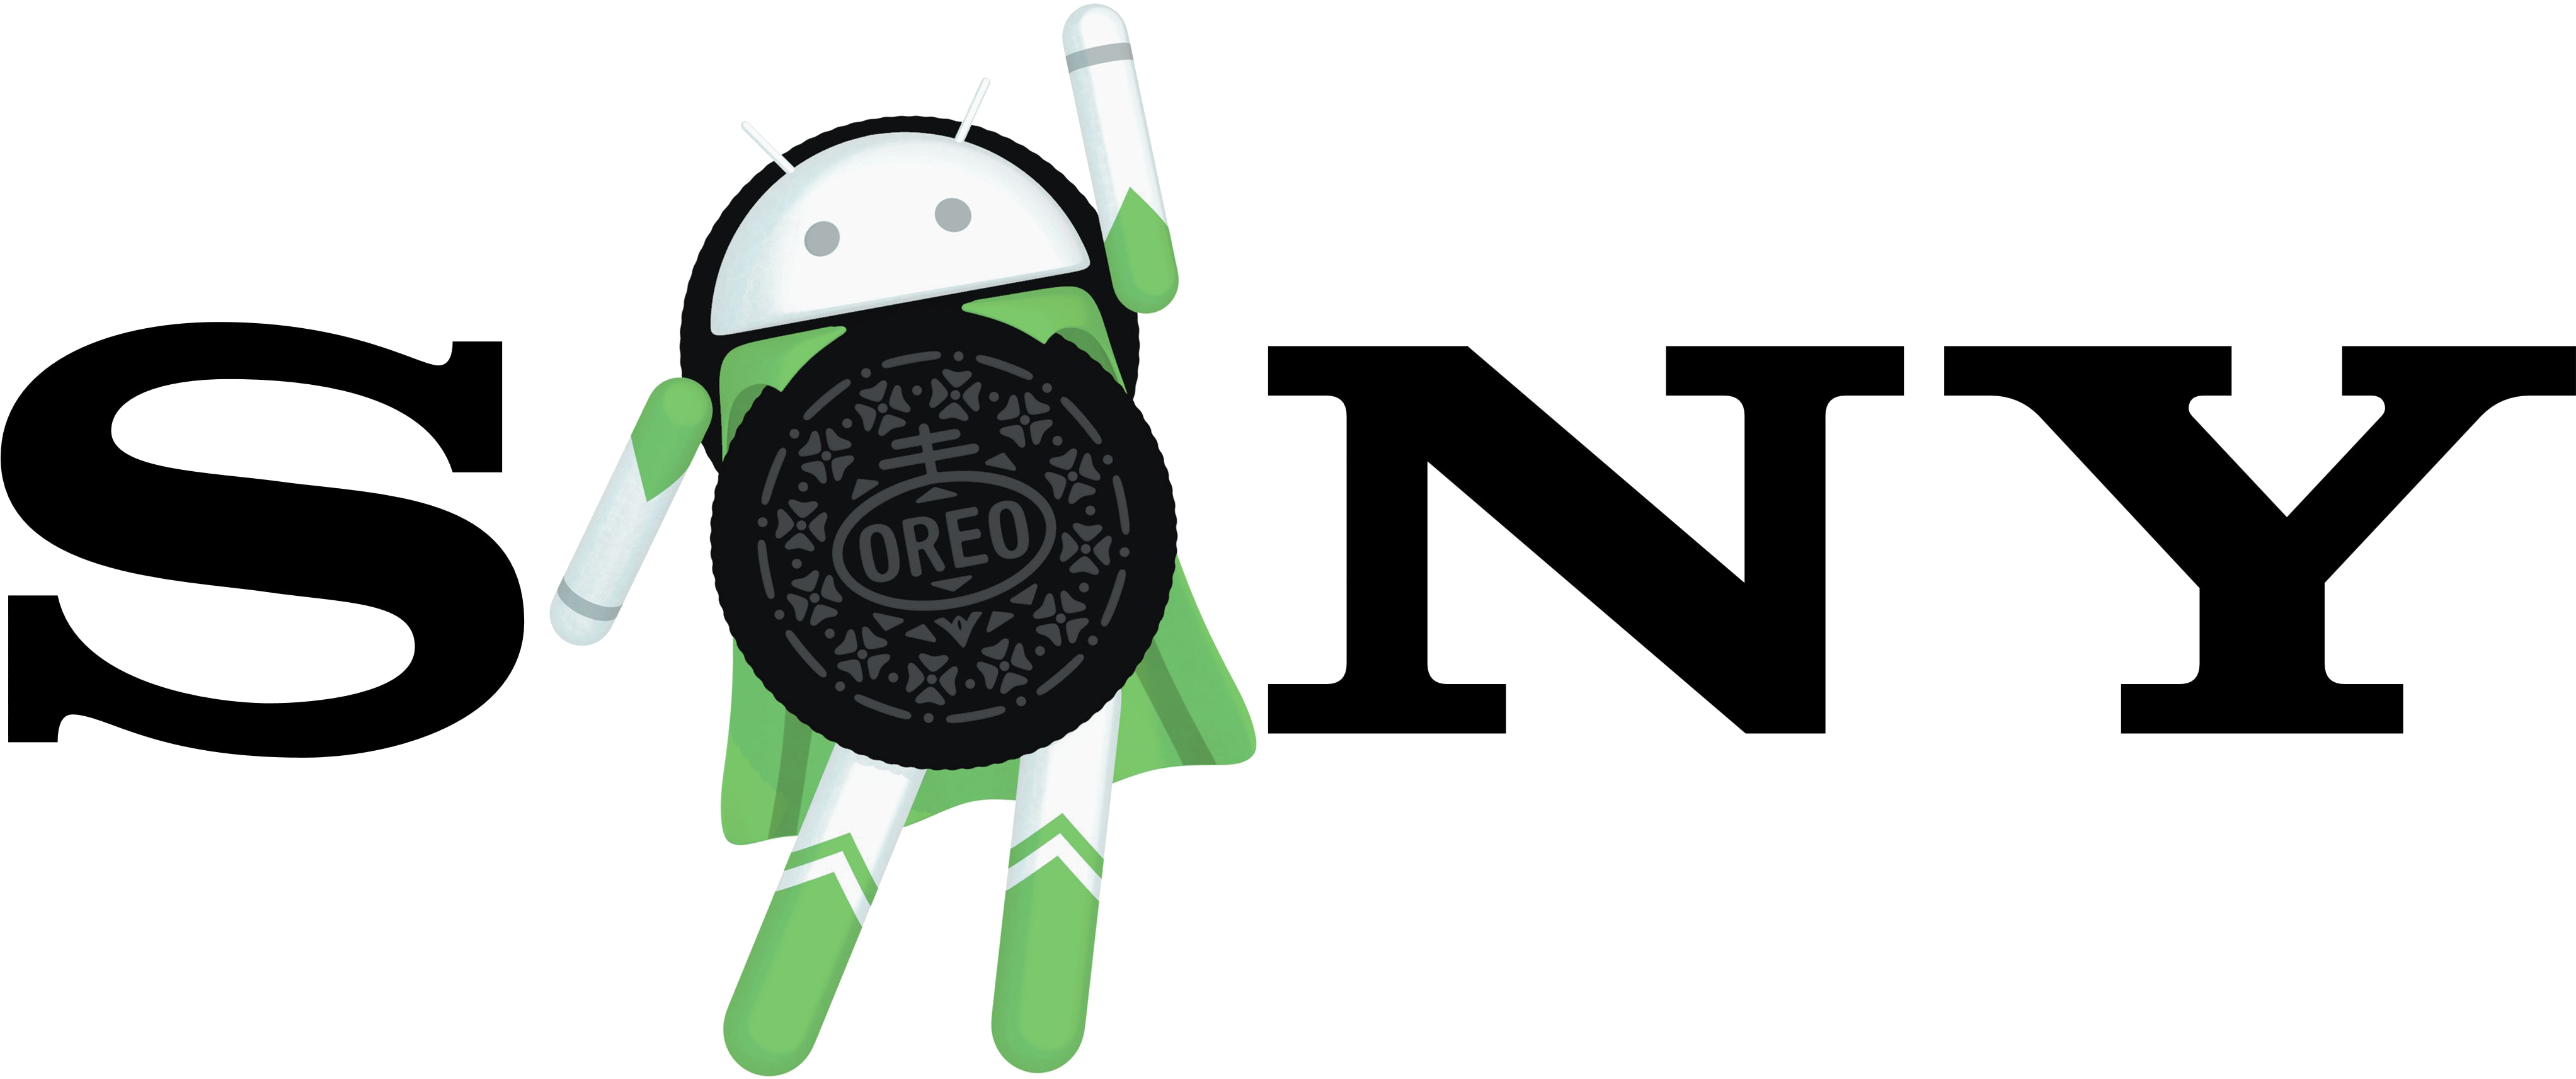 Sony Android Oreo Mashup Logo